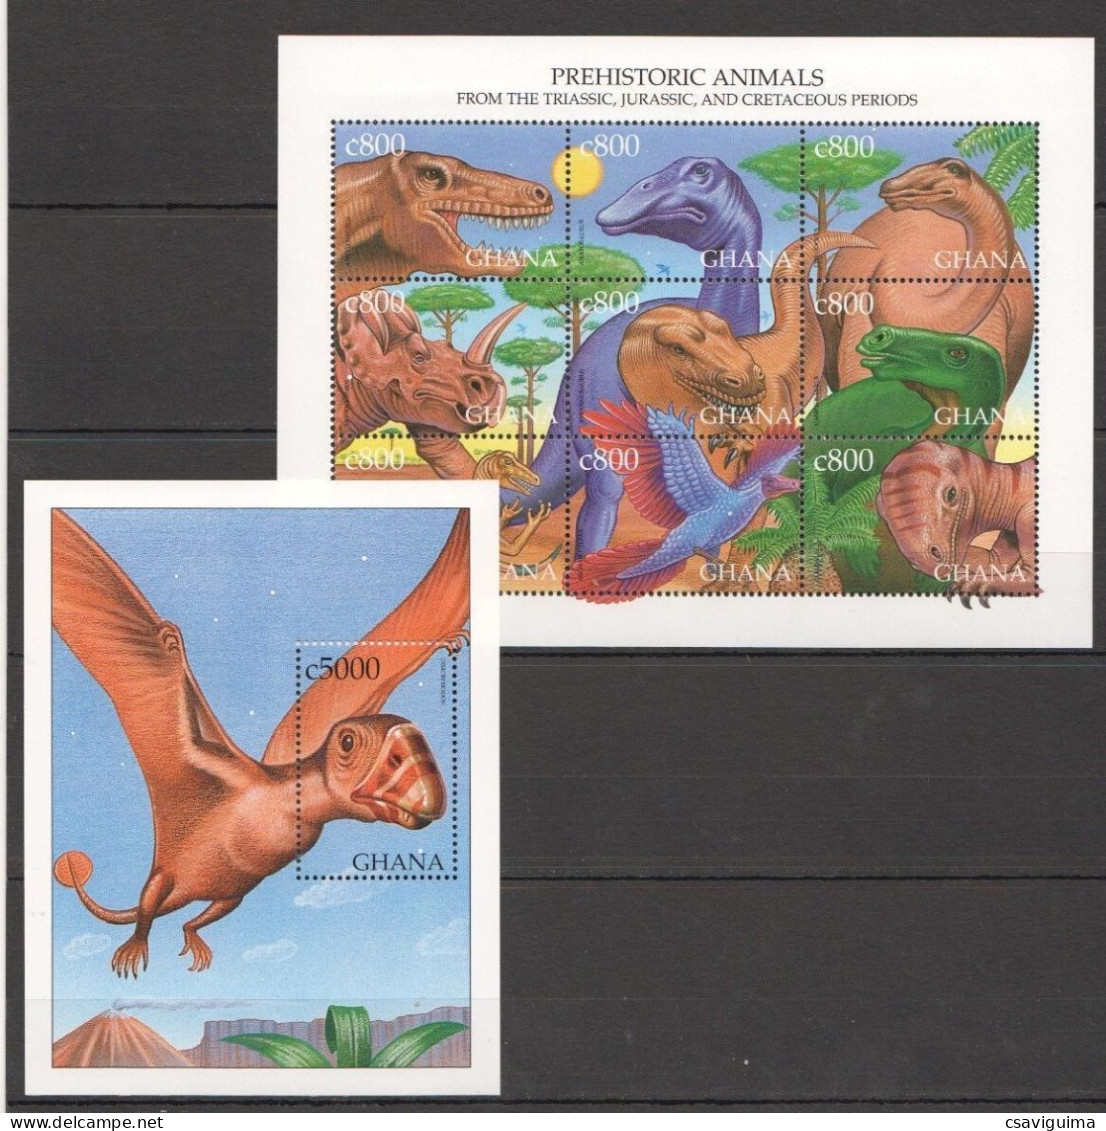 Ghana - 1999 - Prehistoric Animals - Yv 2352/60 + Bf 365 - Prehistorics